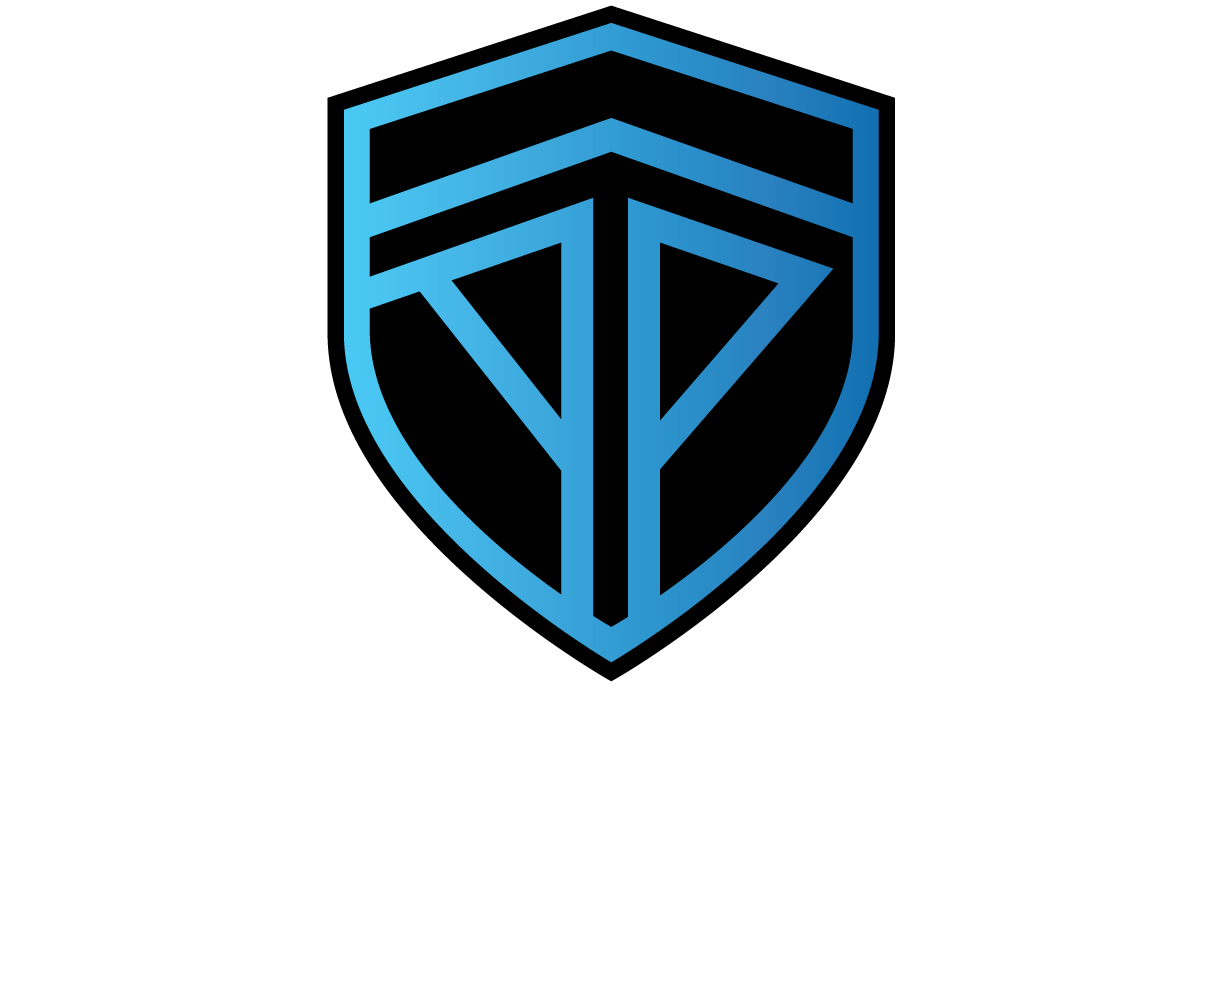 Antebellum Protection logo